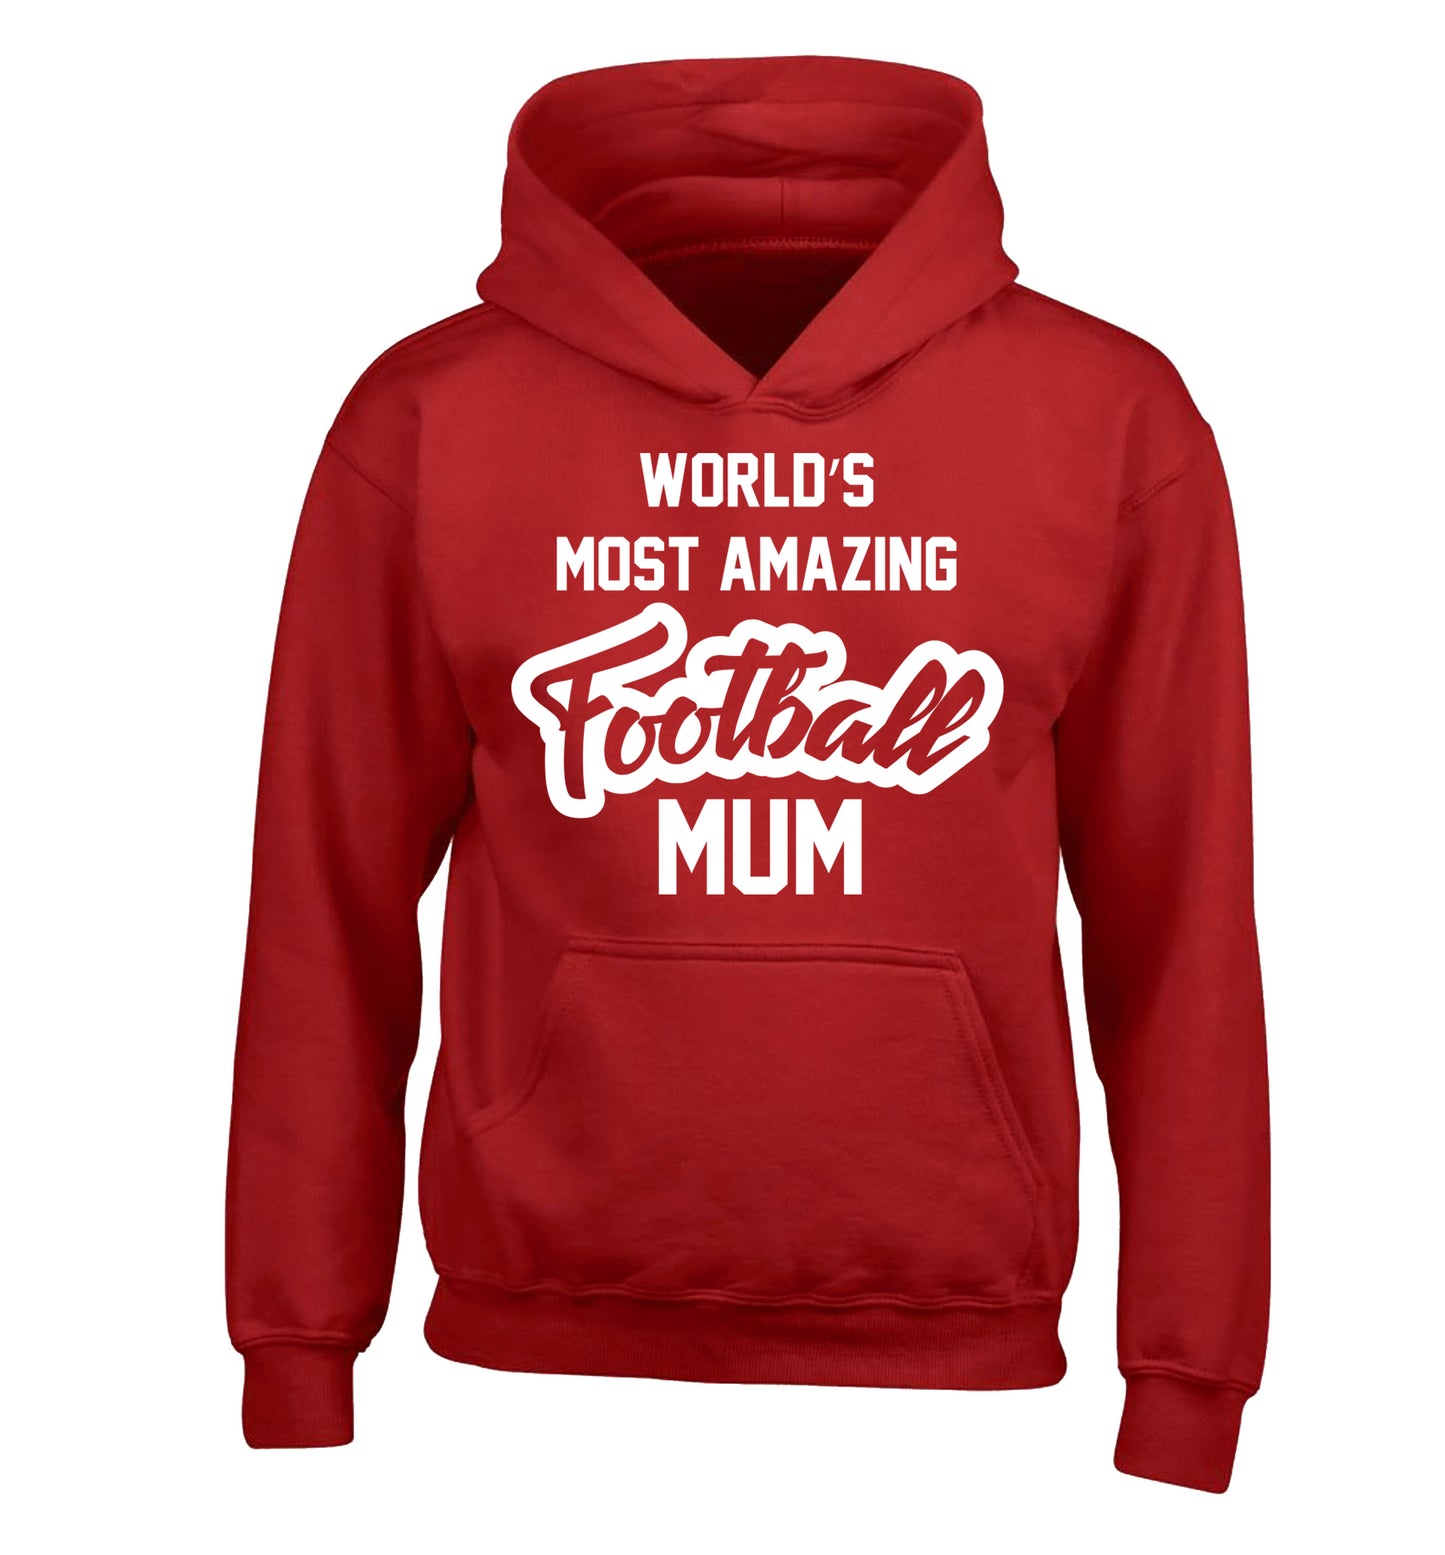 Worlds most amazing football mum children's red hoodie 12-14 Years